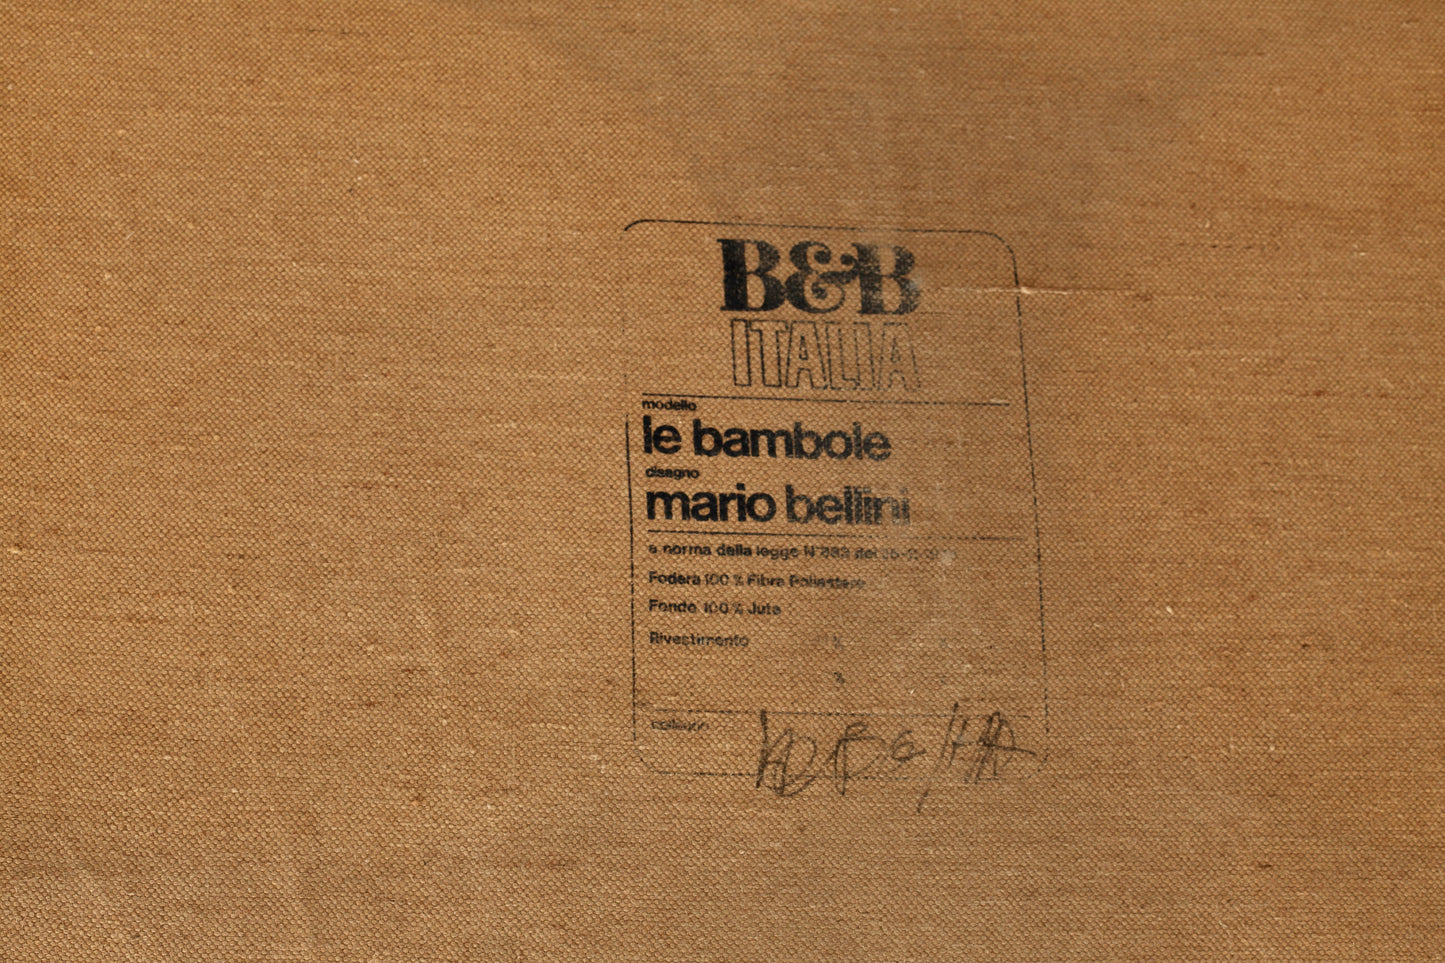 Vintage Le Bambole Sofa by Mario Bellini